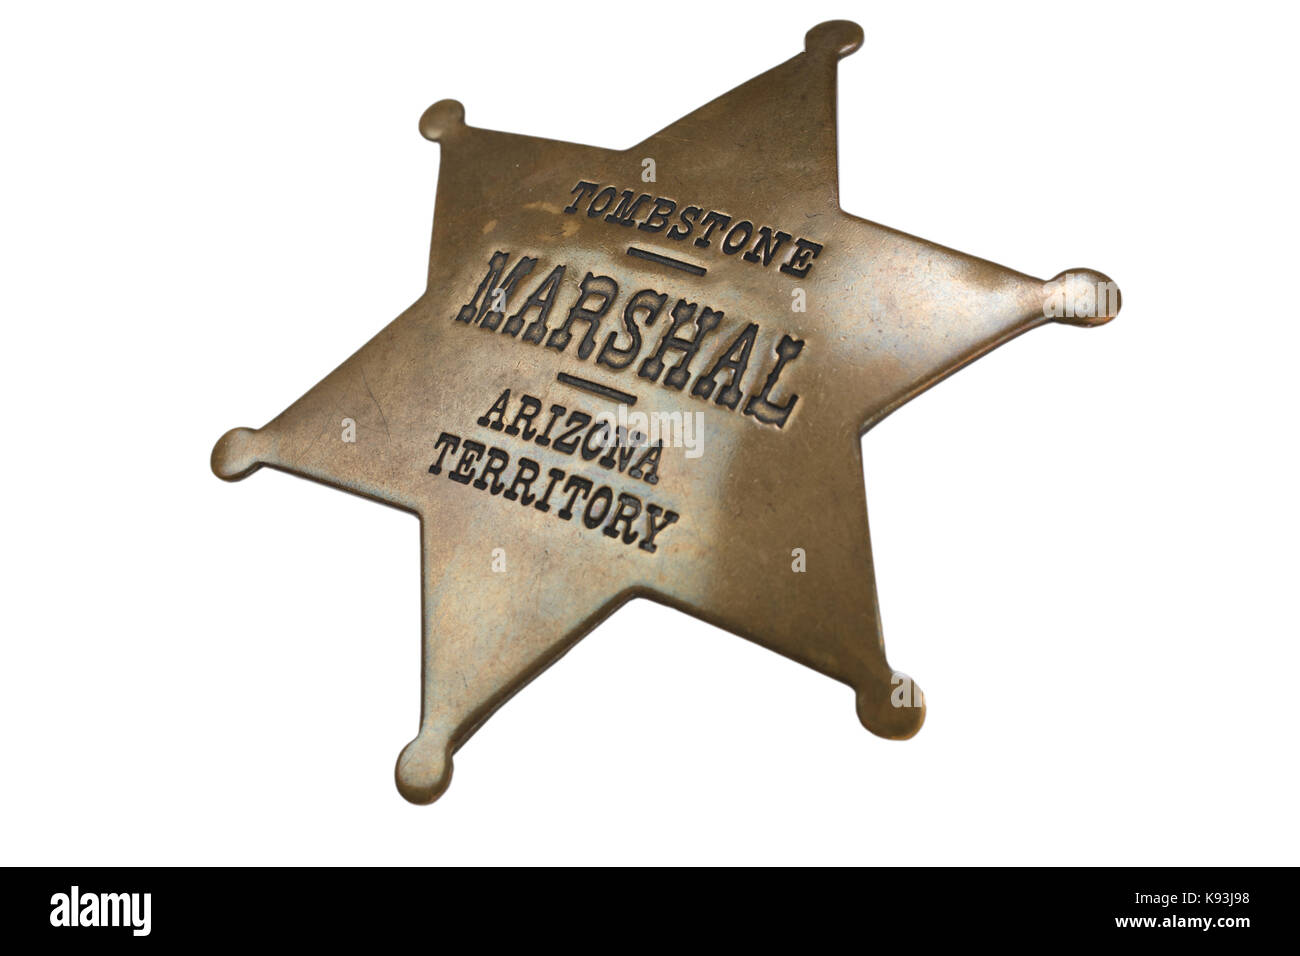 Western-style sheriff badge Stock Photo